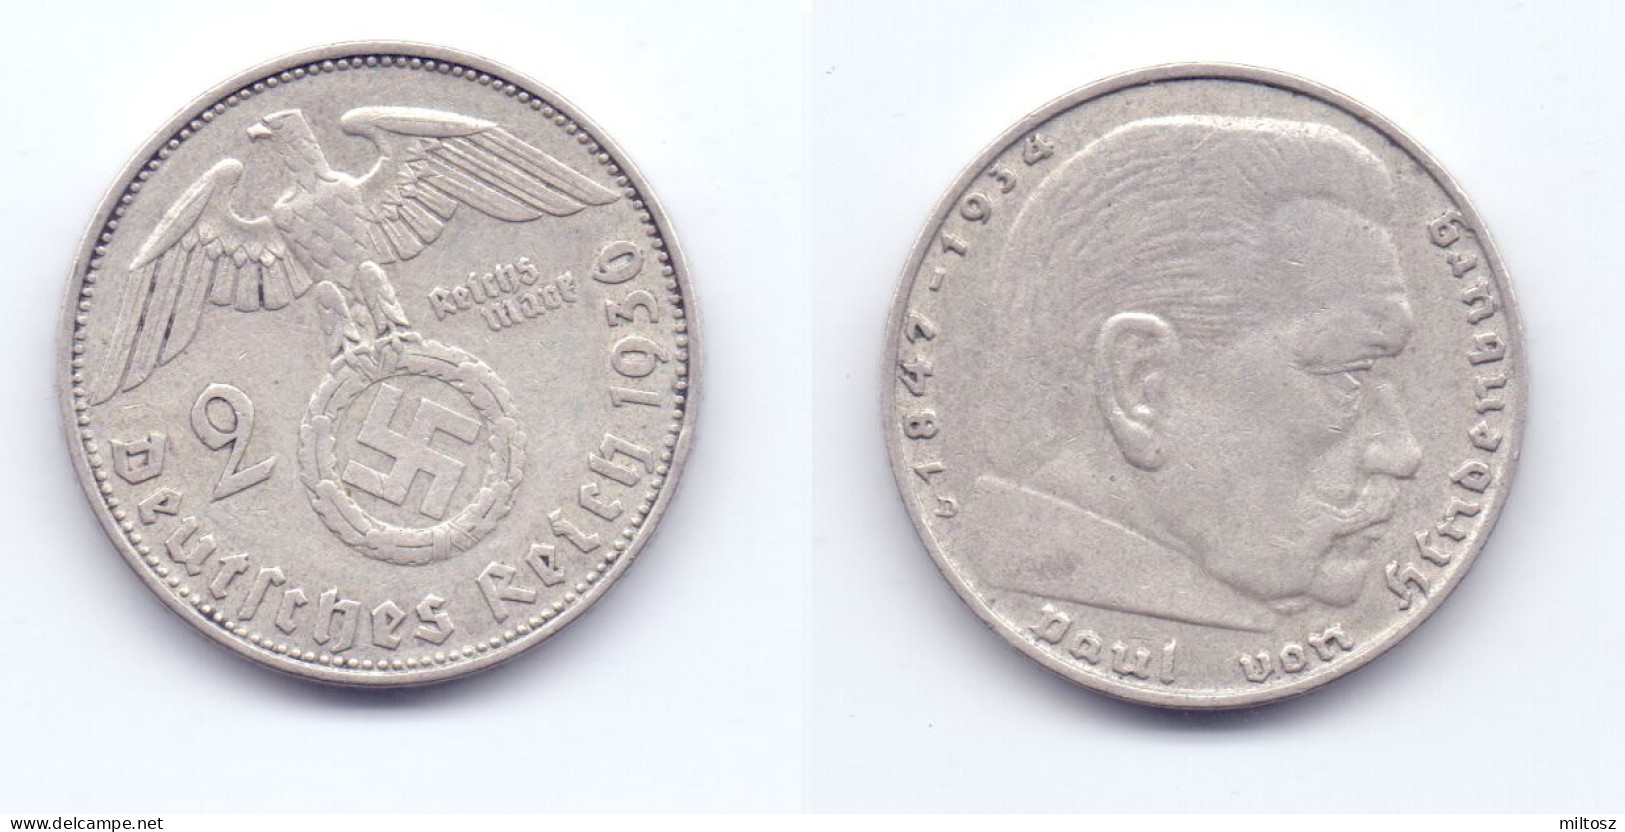 Germany 2 Reichsmark 1936 D - 2 Reichsmark